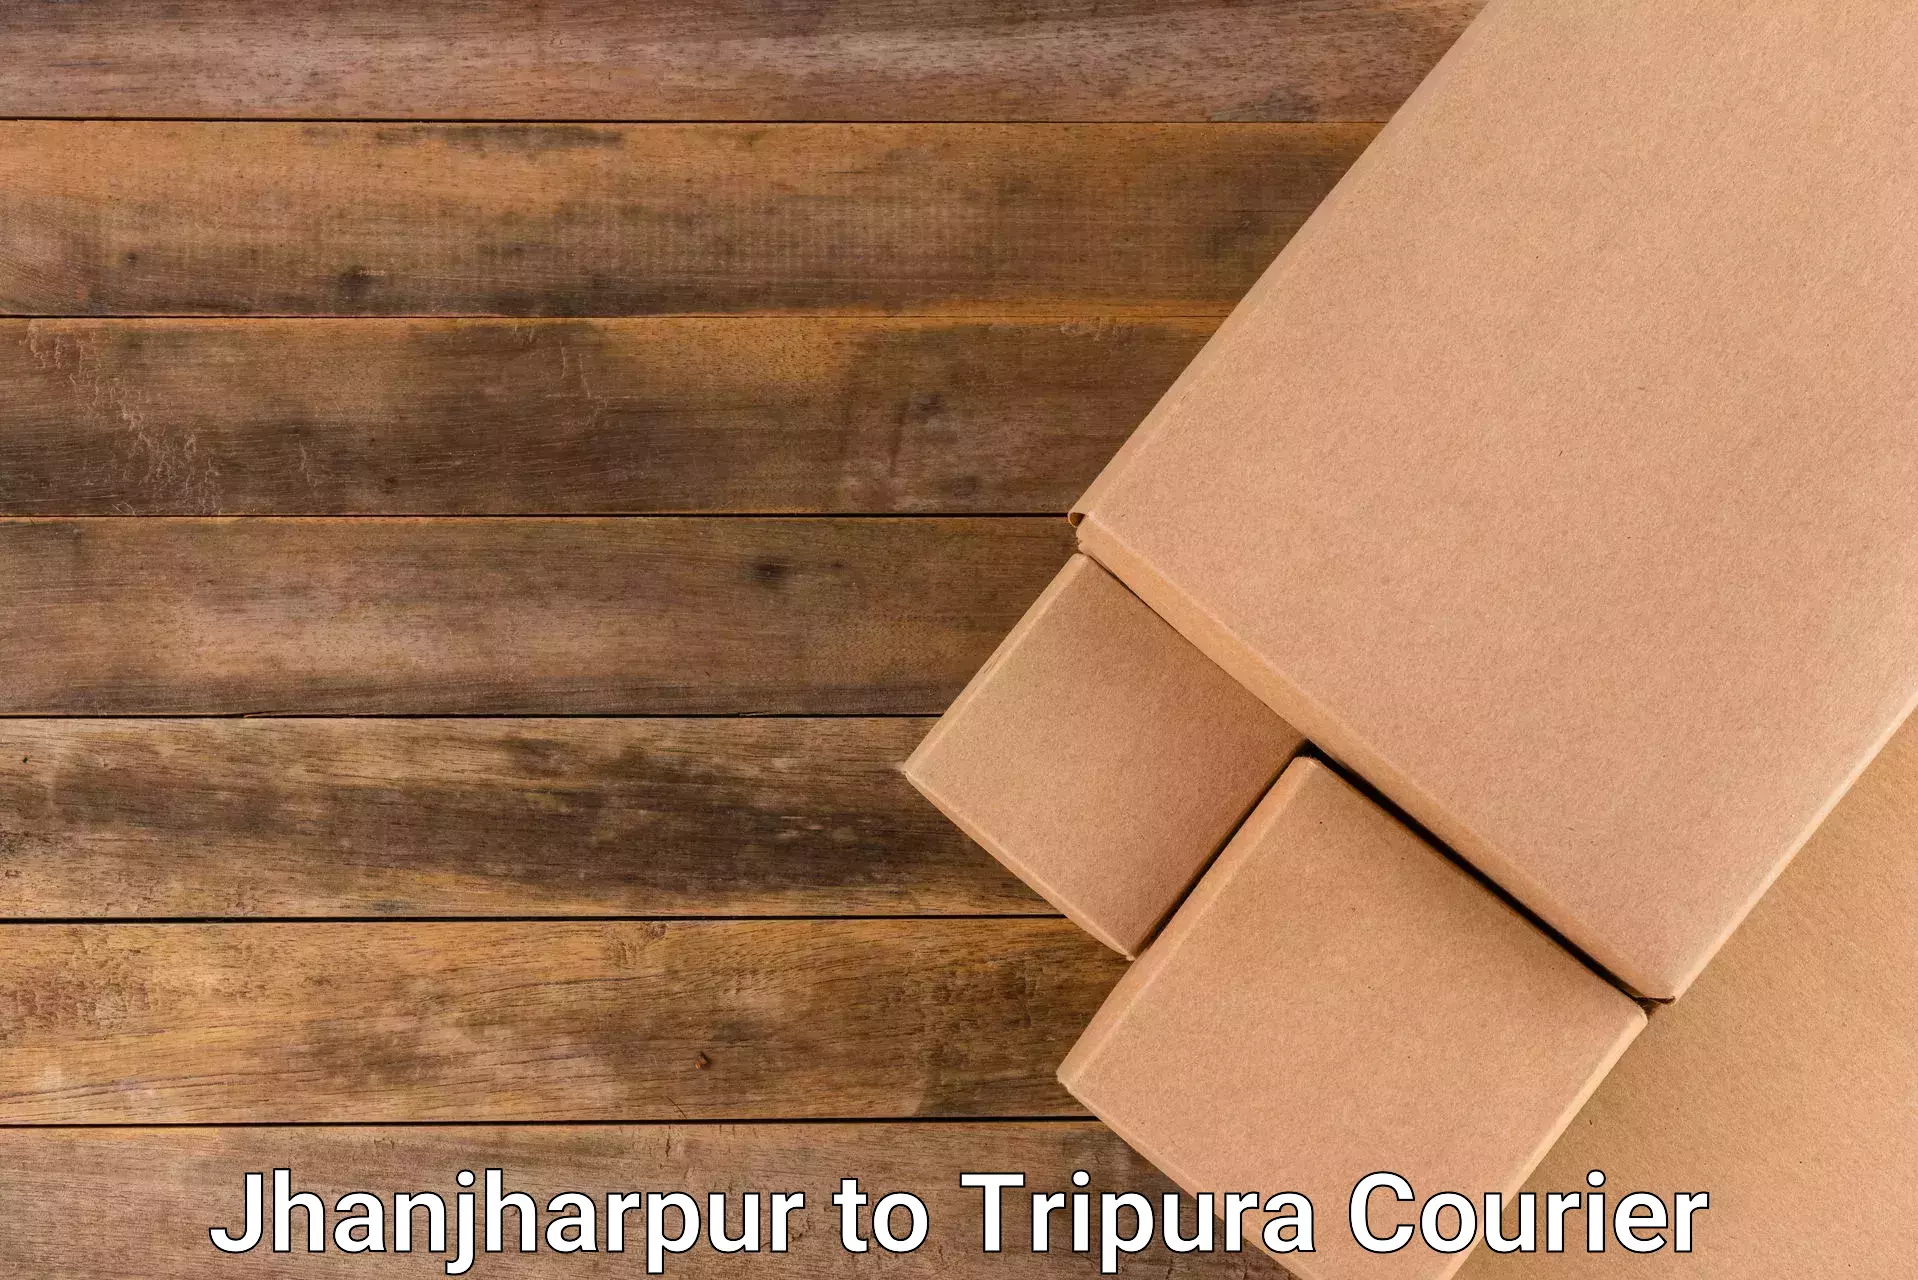 Fragile item shipping Jhanjharpur to Bishalgarh